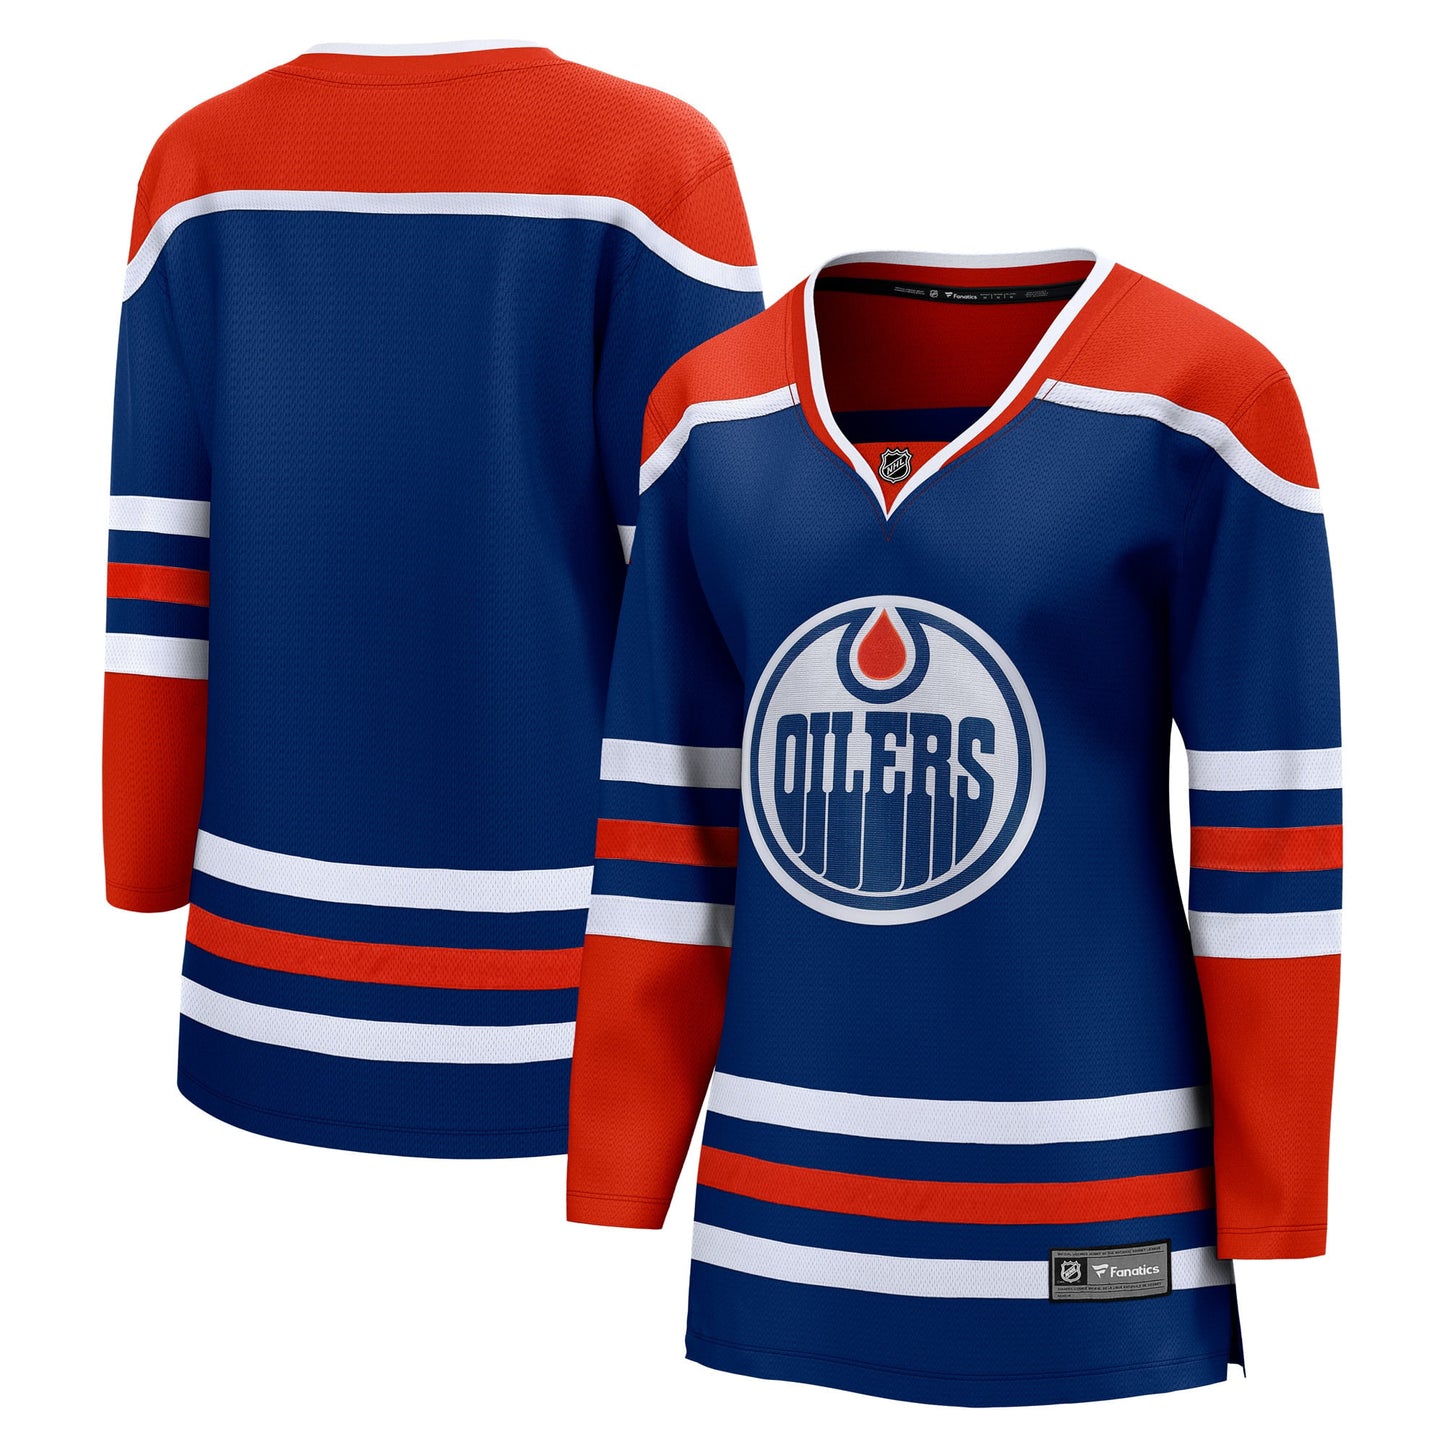 Women's Fanatics Branded Royal Edmonton Oilers Home Breakaway Blank Jersey